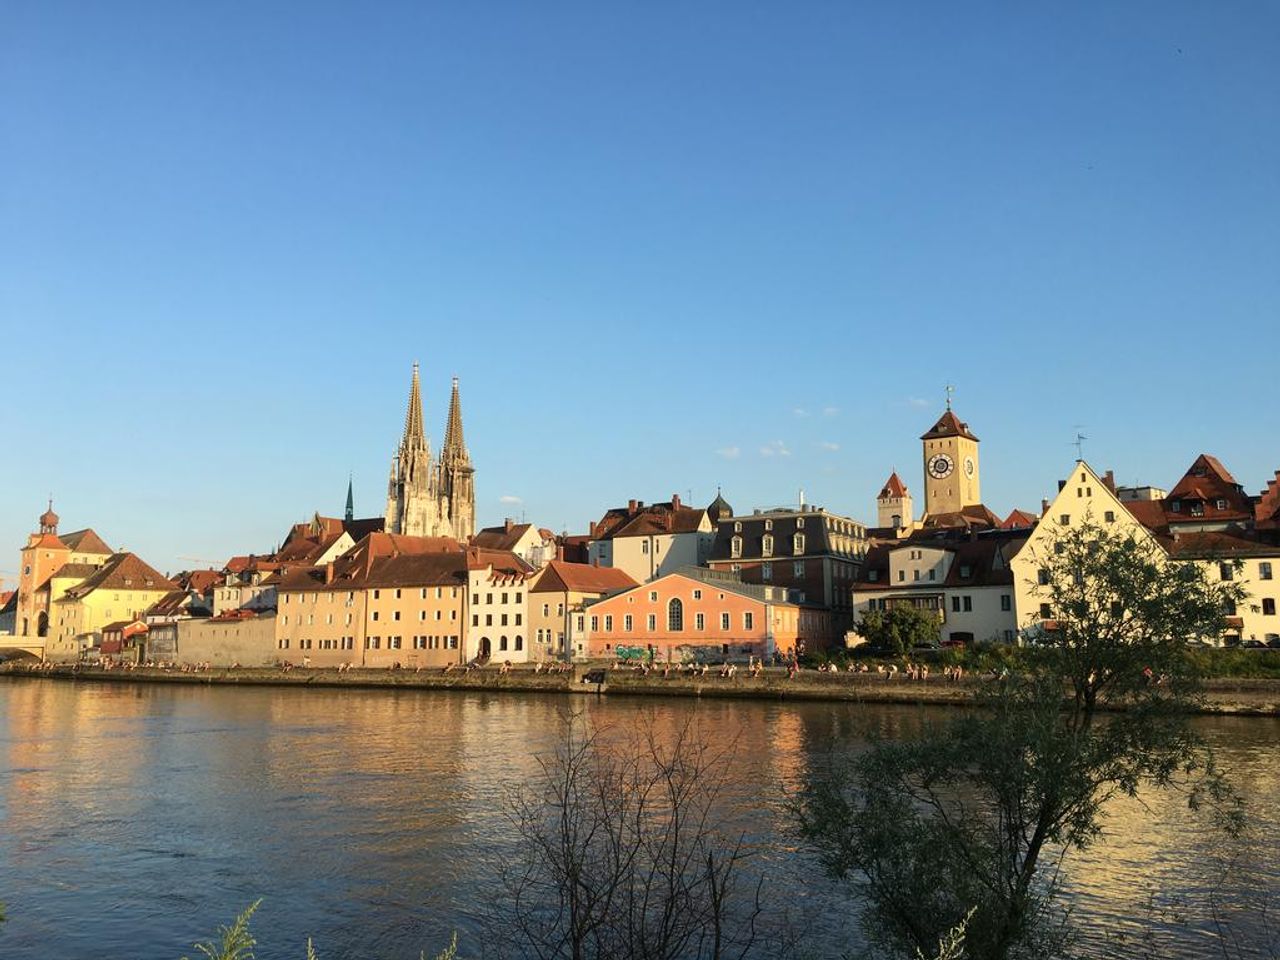 Radeln im wunderschönen Regensburg (3 ÜN)